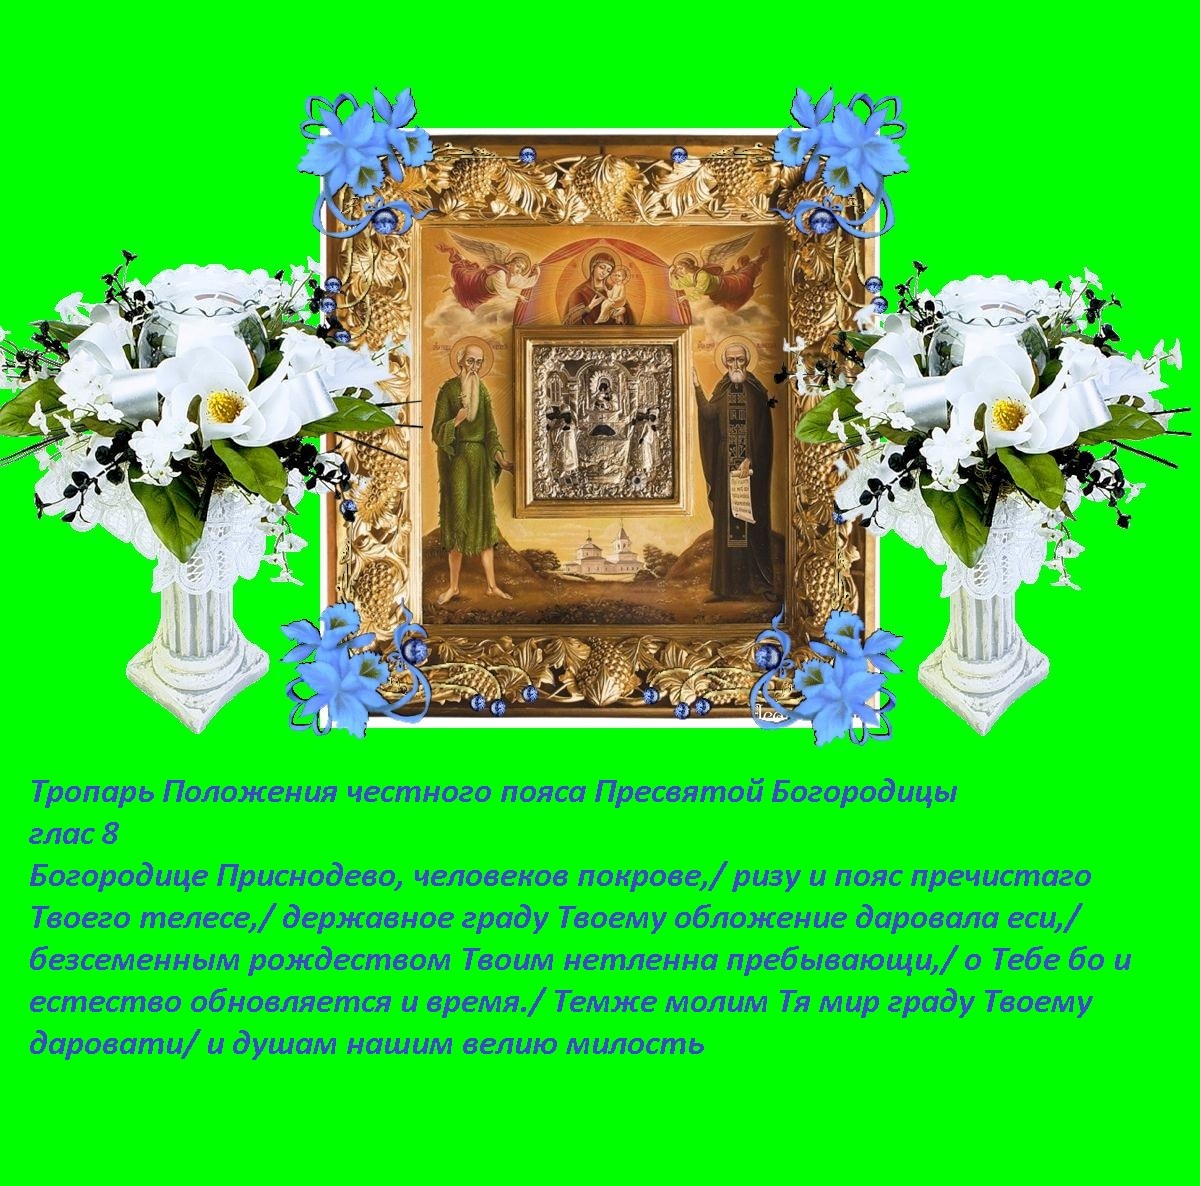 Положение честного пояса Пресвятой Богородицы (395-408). Иконы